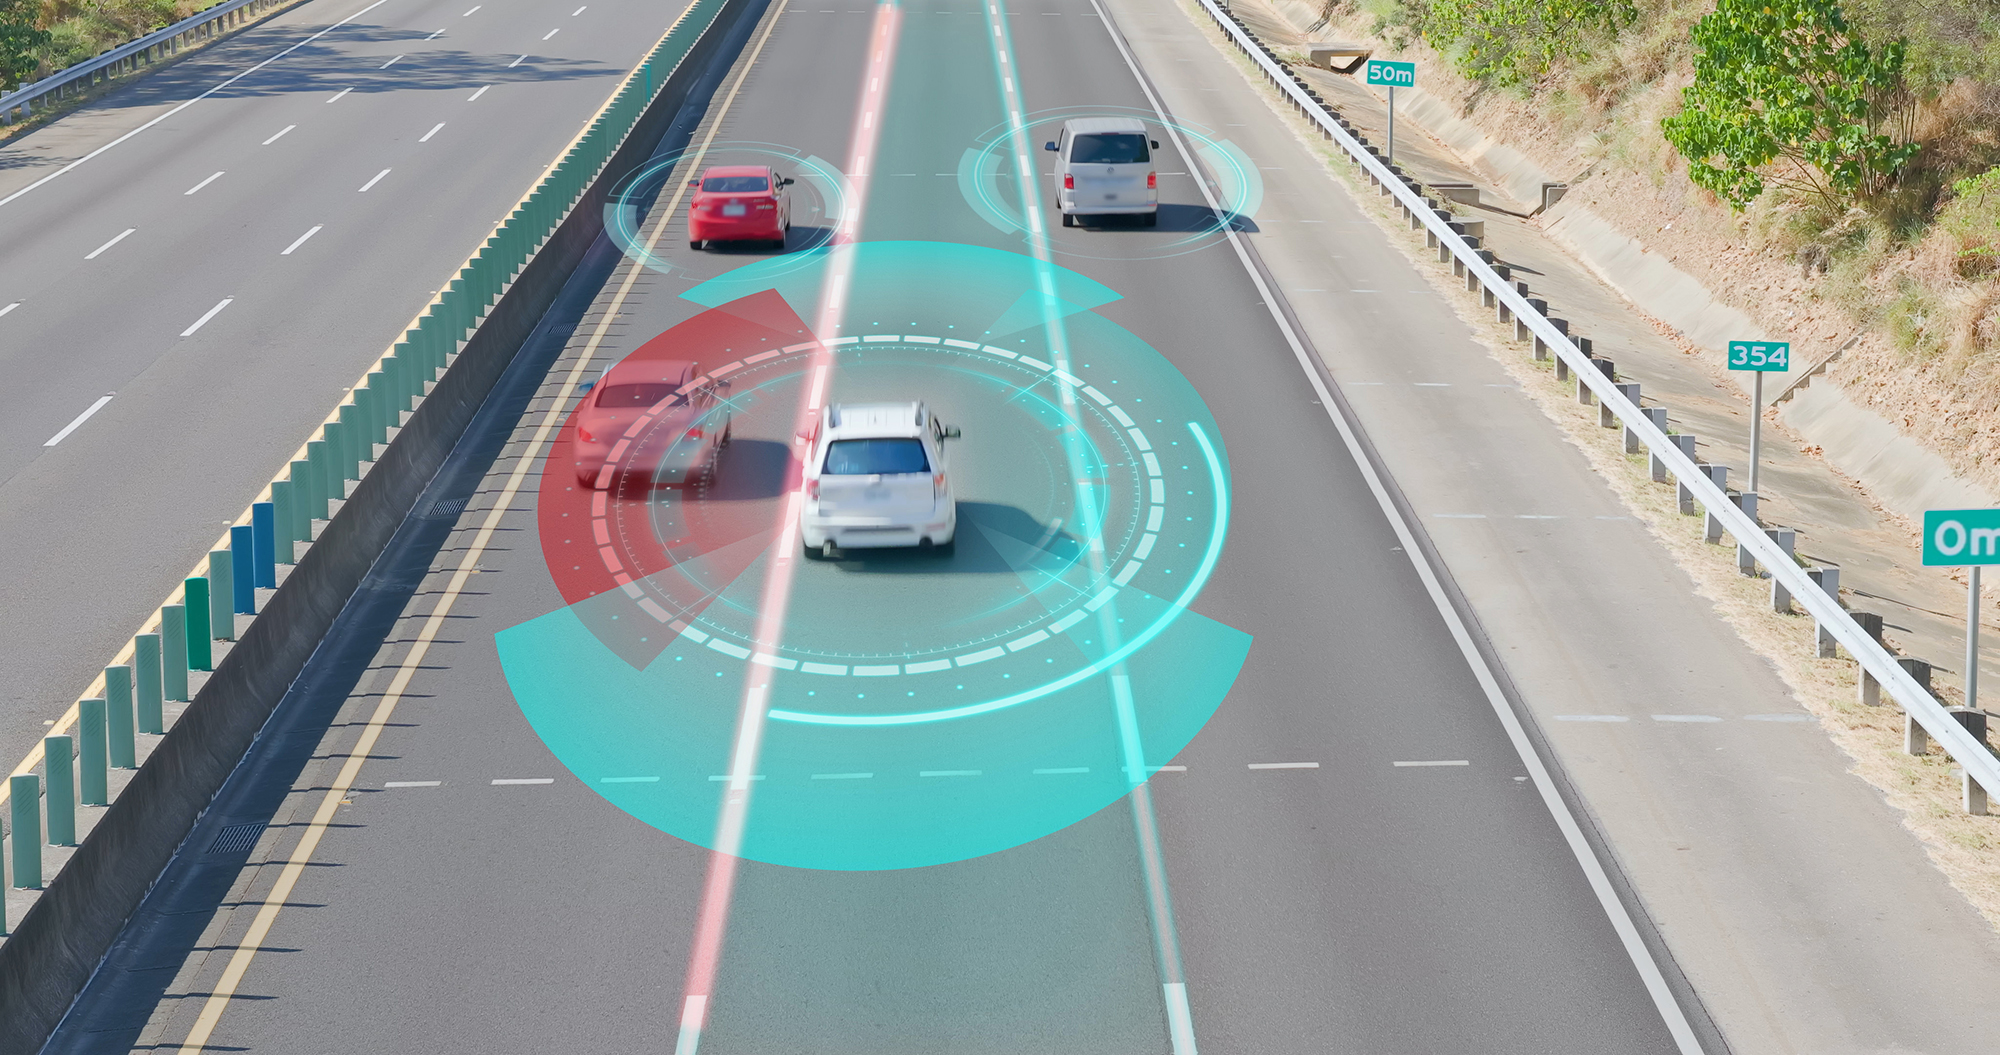 La technologie LiDAR contrôle la distance entre les véhicules en mesurant le temps nécessaire à la lumière réfléchie pour revenir au capteur.